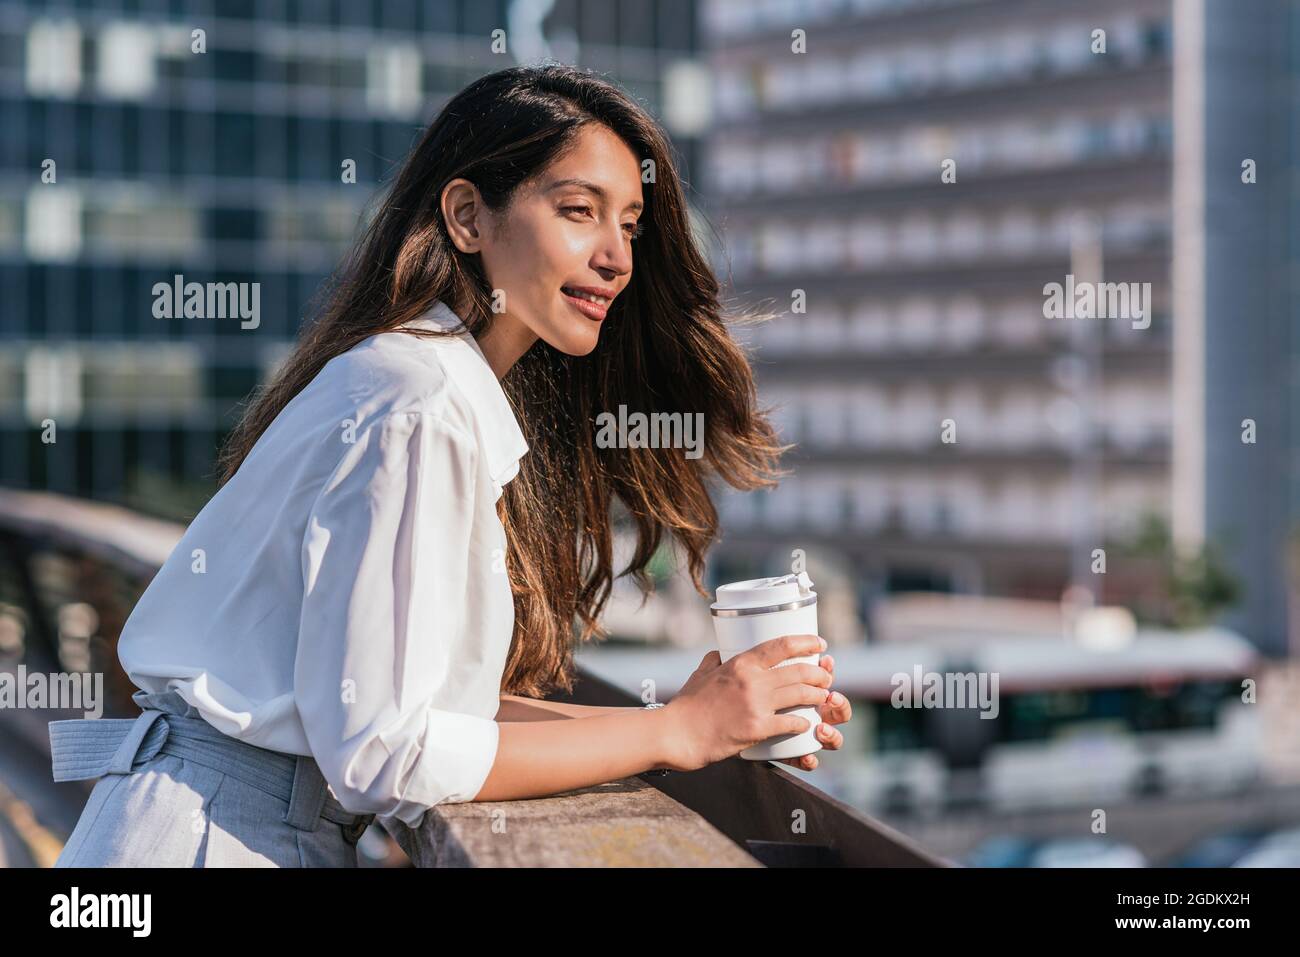 Horizontales Porträt einer attraktiven jungen indischen Geschäftsfrau, die auf einem Balkongeländer liegt. Sie hält einen wiederverwendbaren Kaffeebecher und hat Bürogebäude im Hintergrund Stockfoto